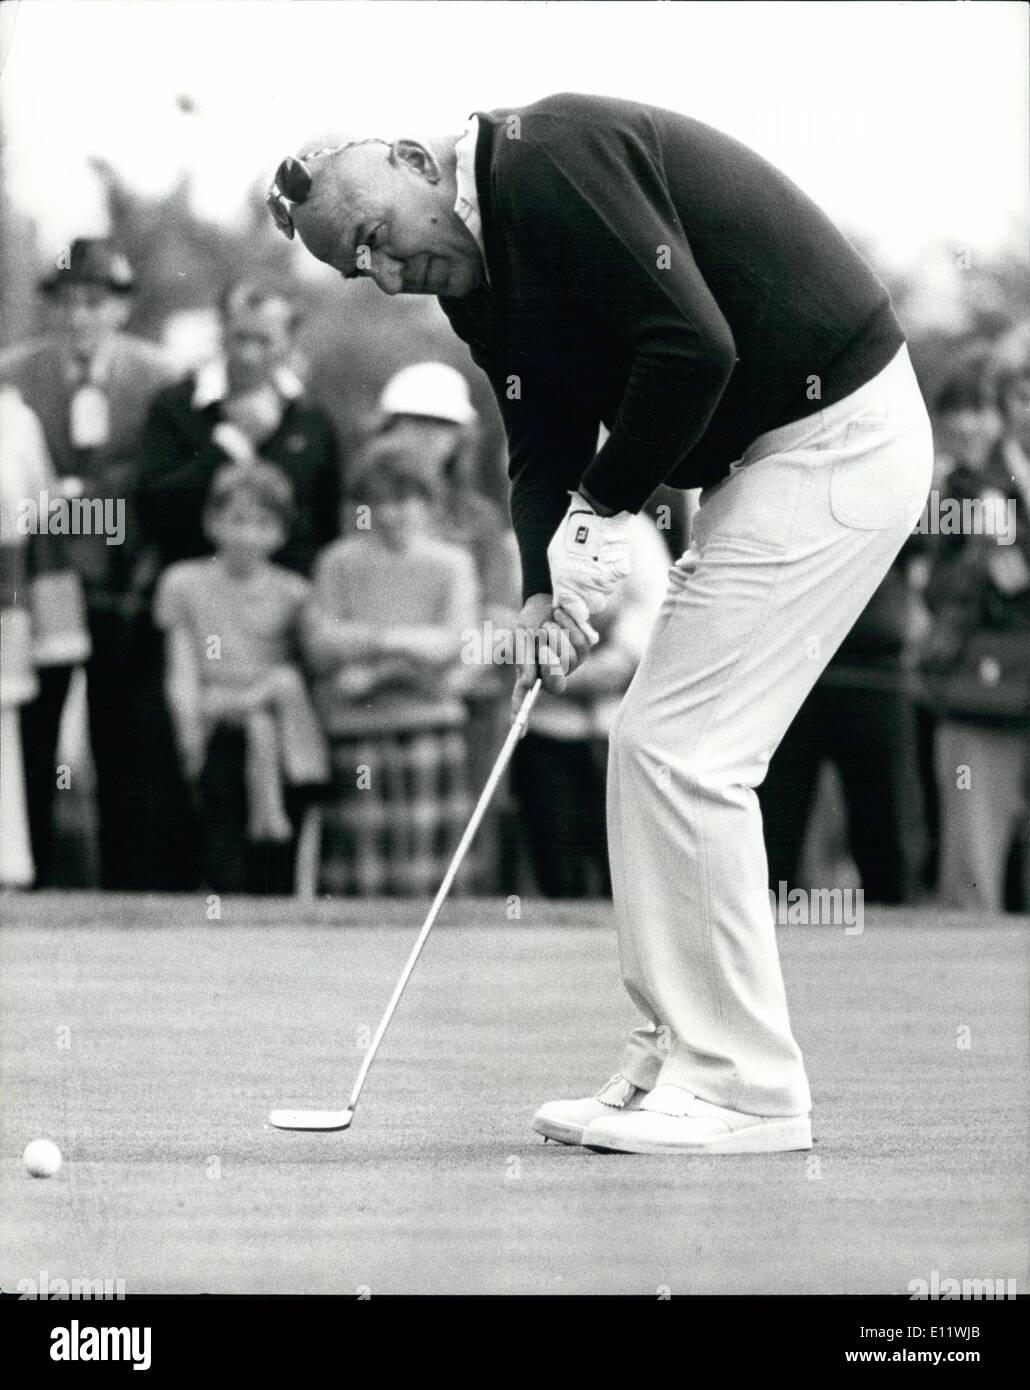 Septembre 09, 1980 - Telly Savalas dans British Bob Hope Classic. La photo montre la célèbre Star américaine Telly Savalas vu mettre au cours de la British Bob Hope Classic Golf Tournament à Epson hier. Banque D'Images